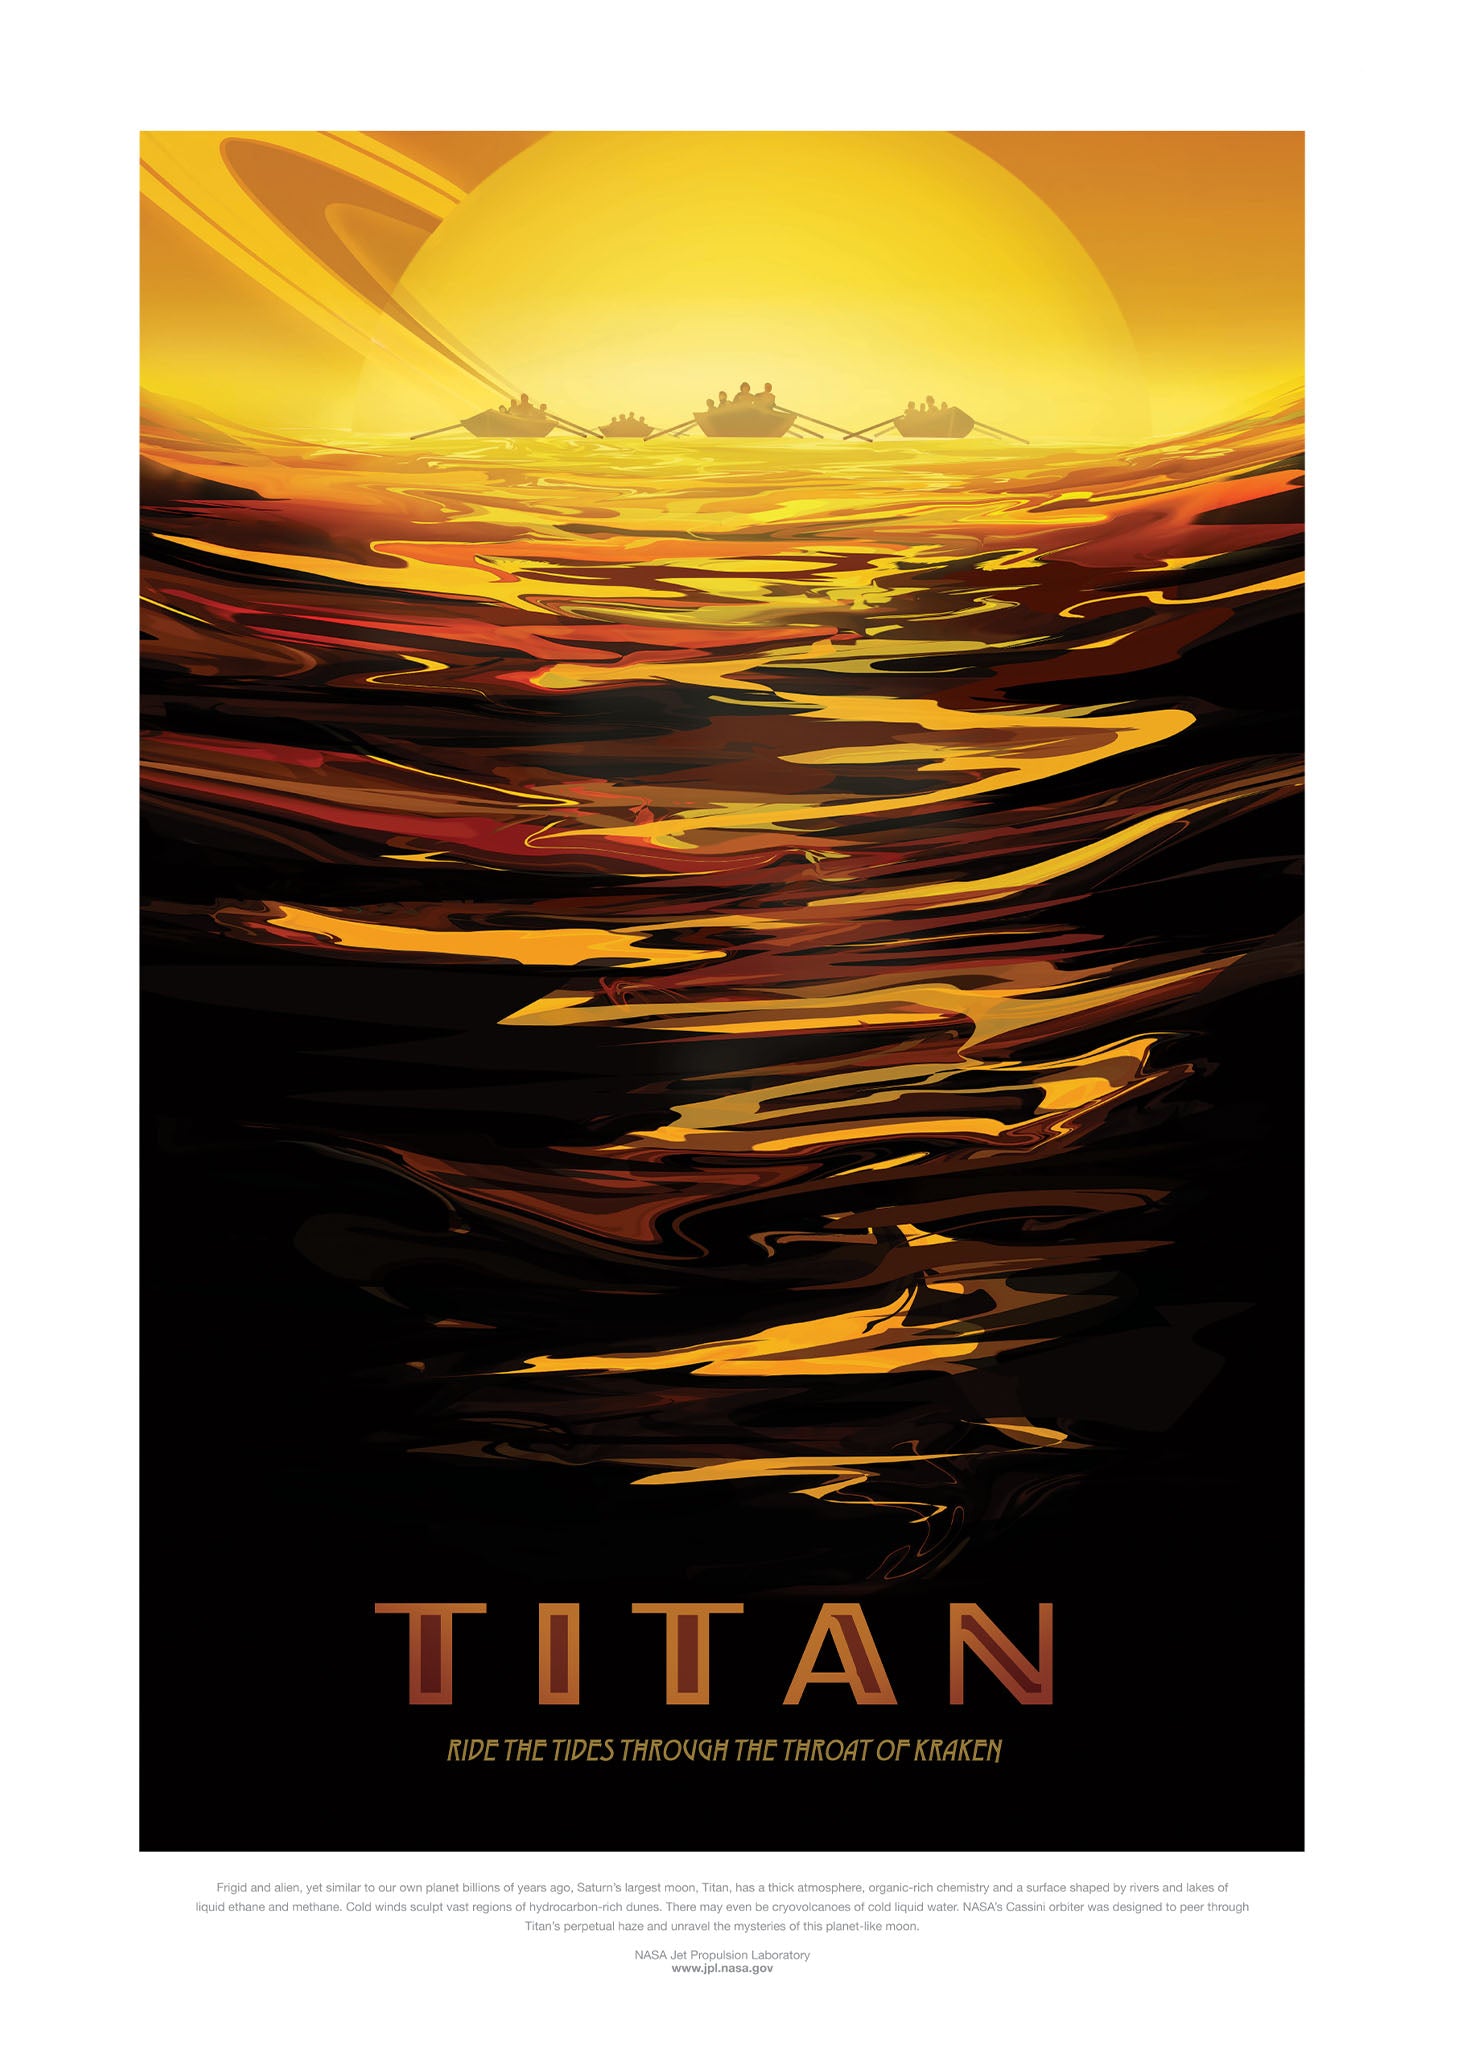 Titan  - Visions of the Future NASA